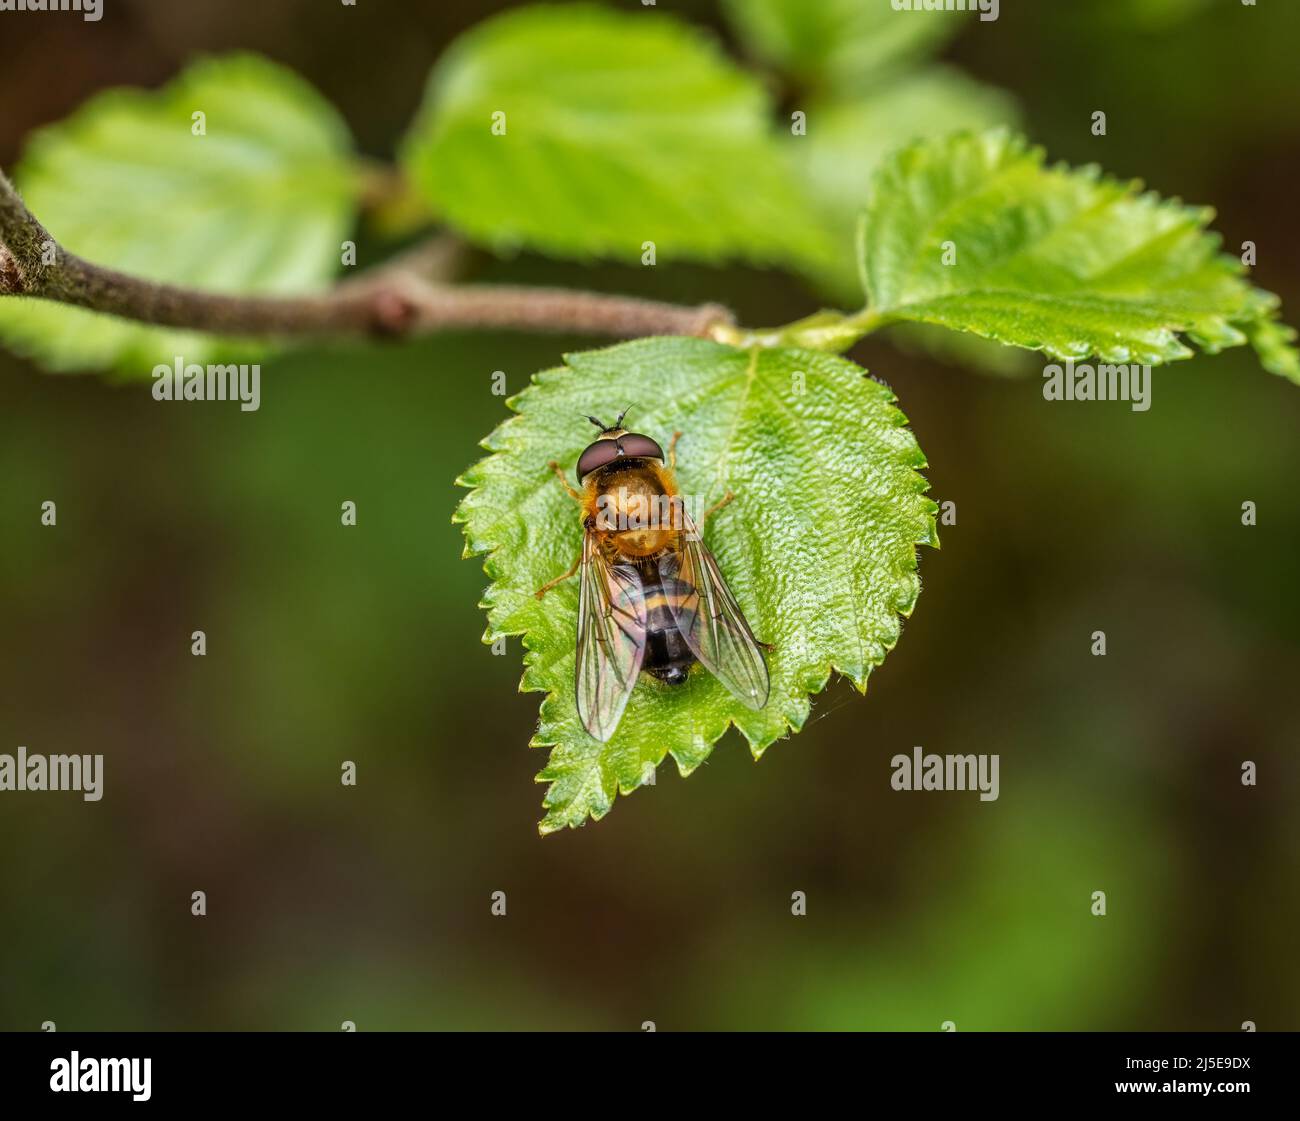 Hoverfly Epistrophe eligans on leaf. Metallic, shiny insect. UK. Stock Photo